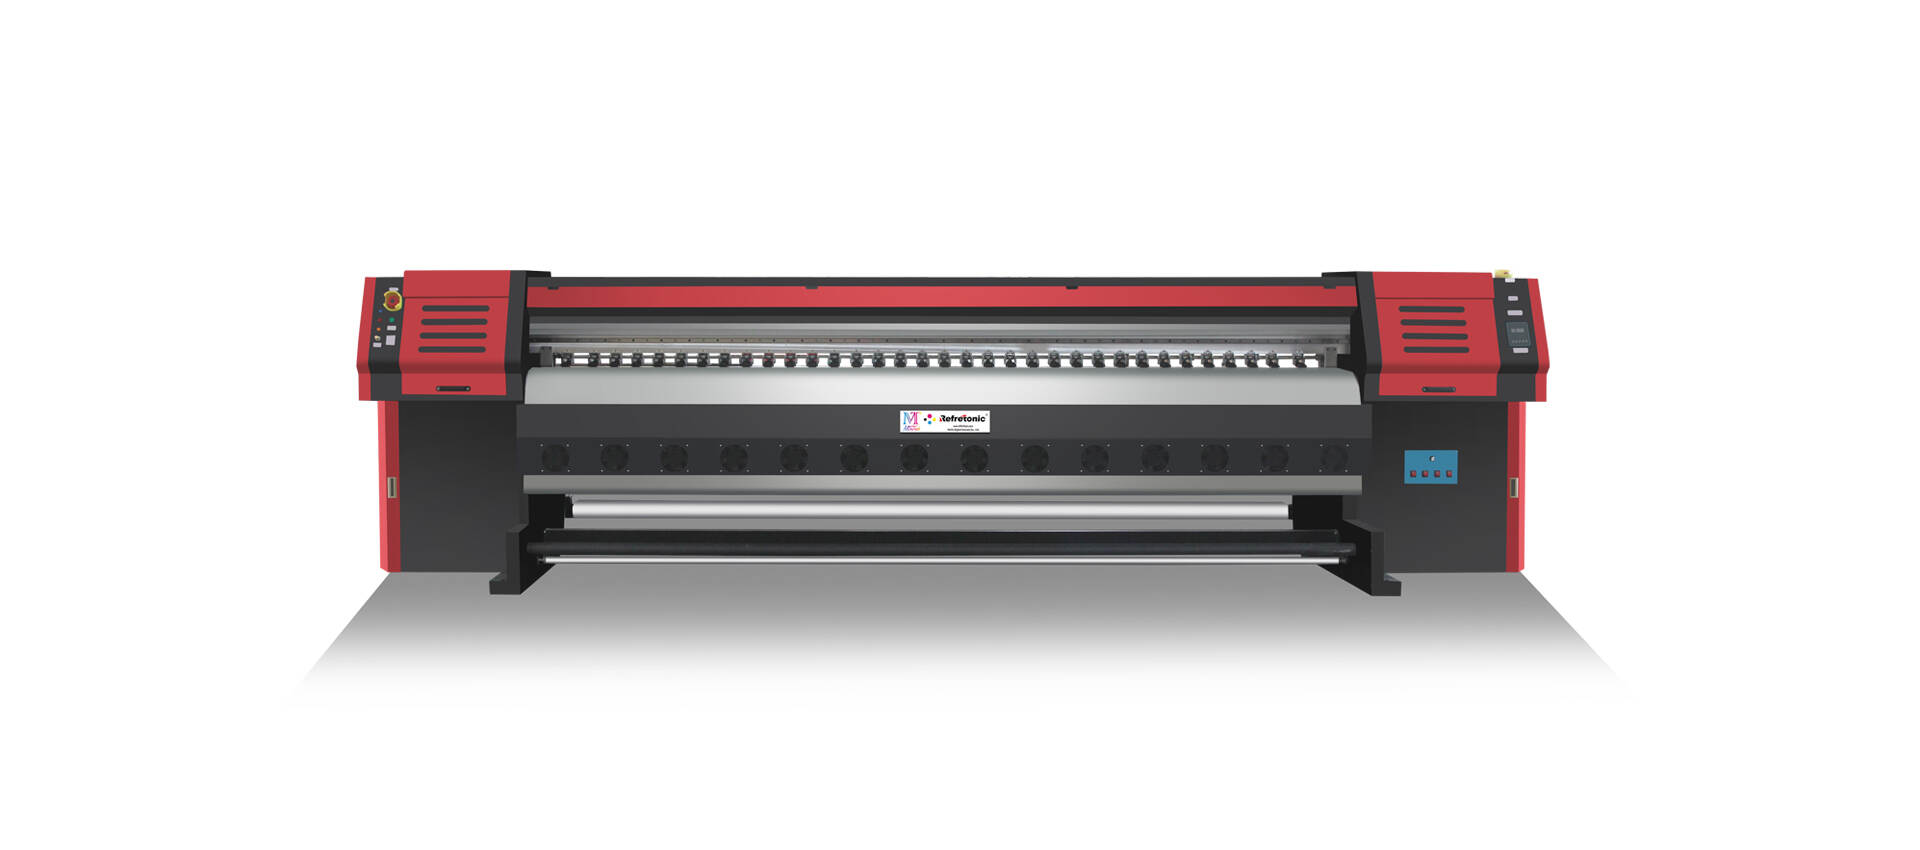 Large Format Sublimation Printer MT-P1908Pro Max